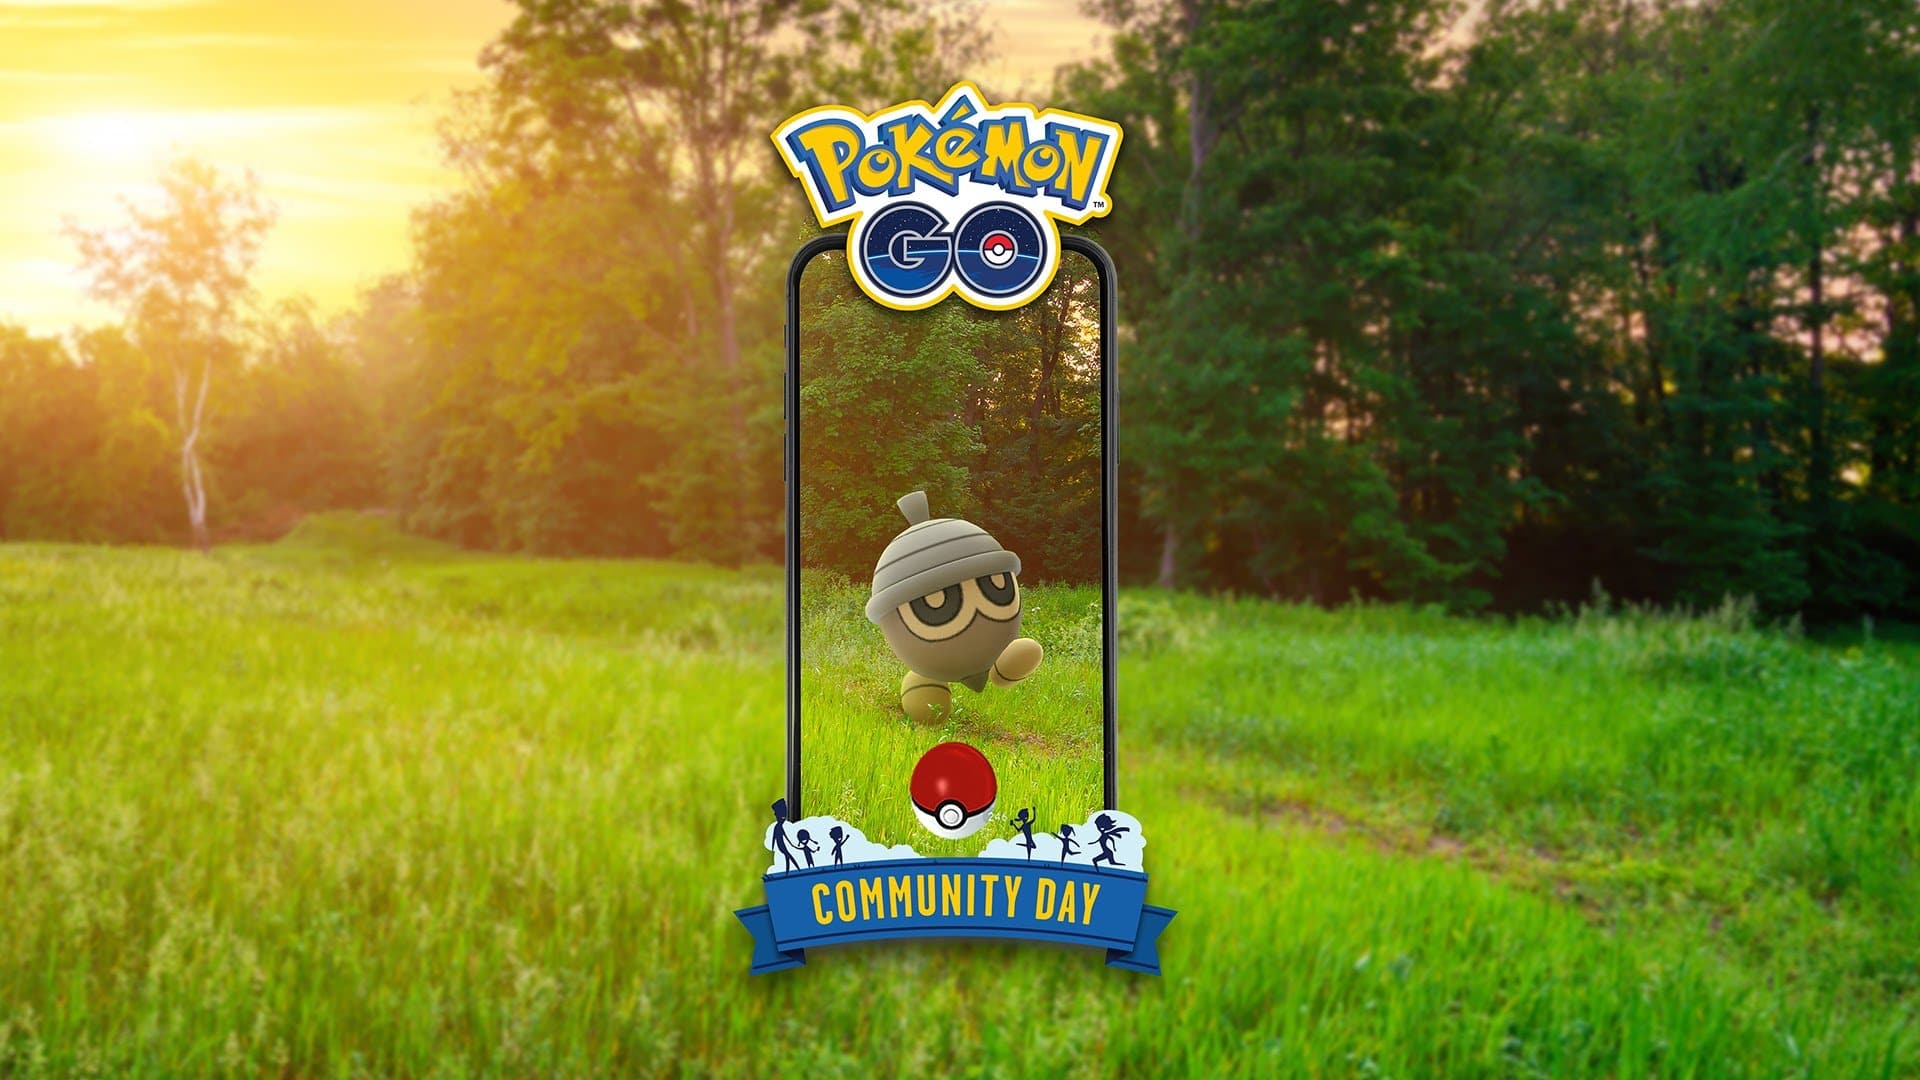 Seedot protagoniza el próximo Día de la Comunidad de Pokémon GO: todos los detalles